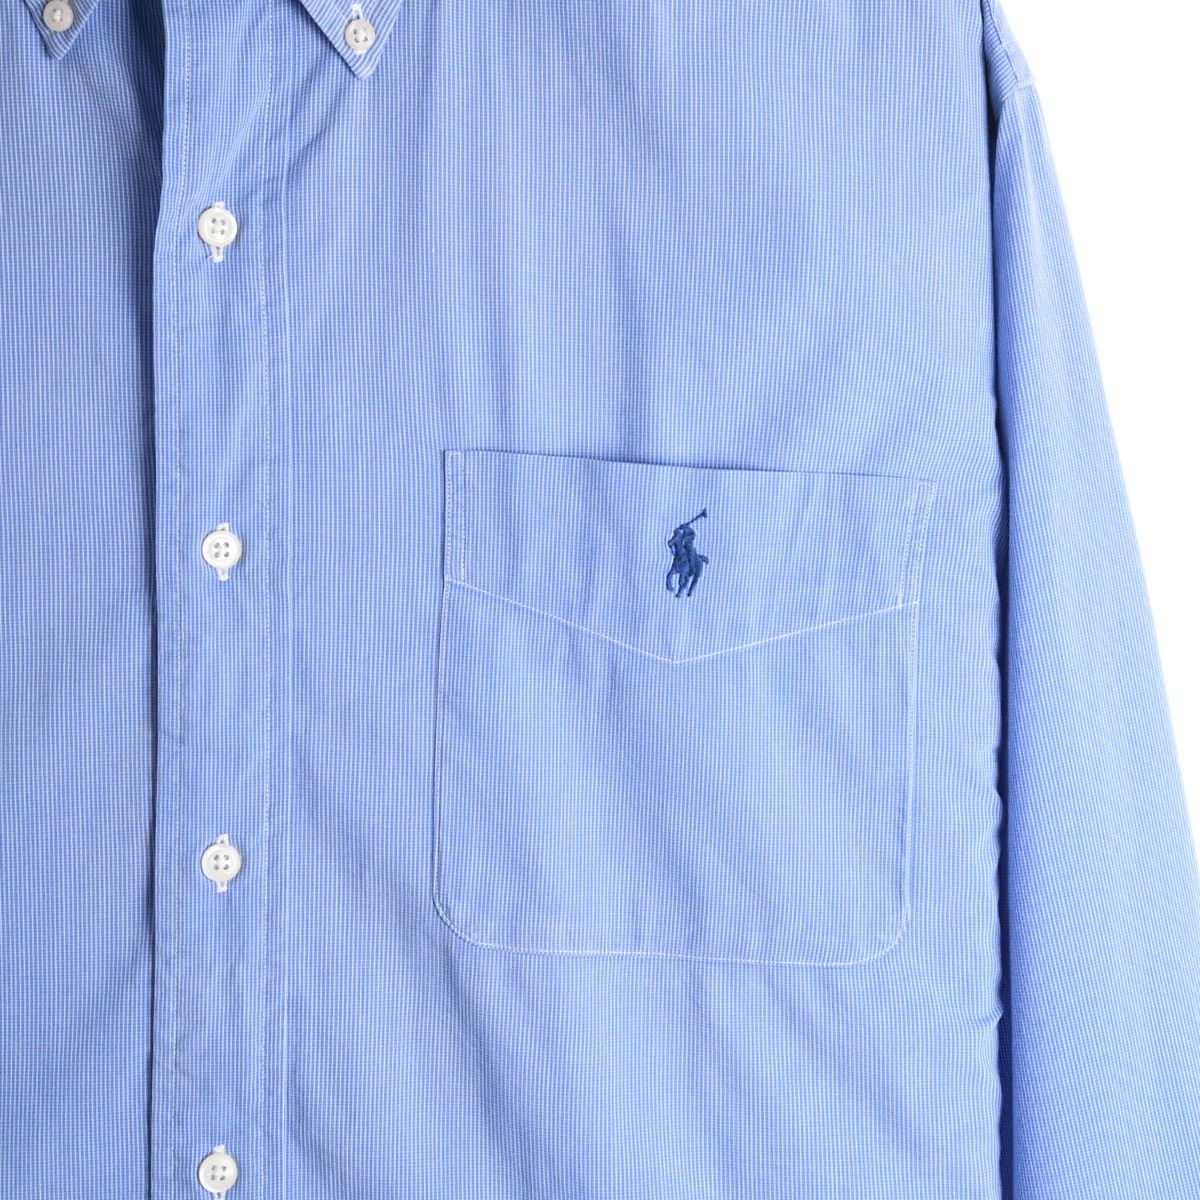 Ralph Lauren Yarmouth Blue Shirt